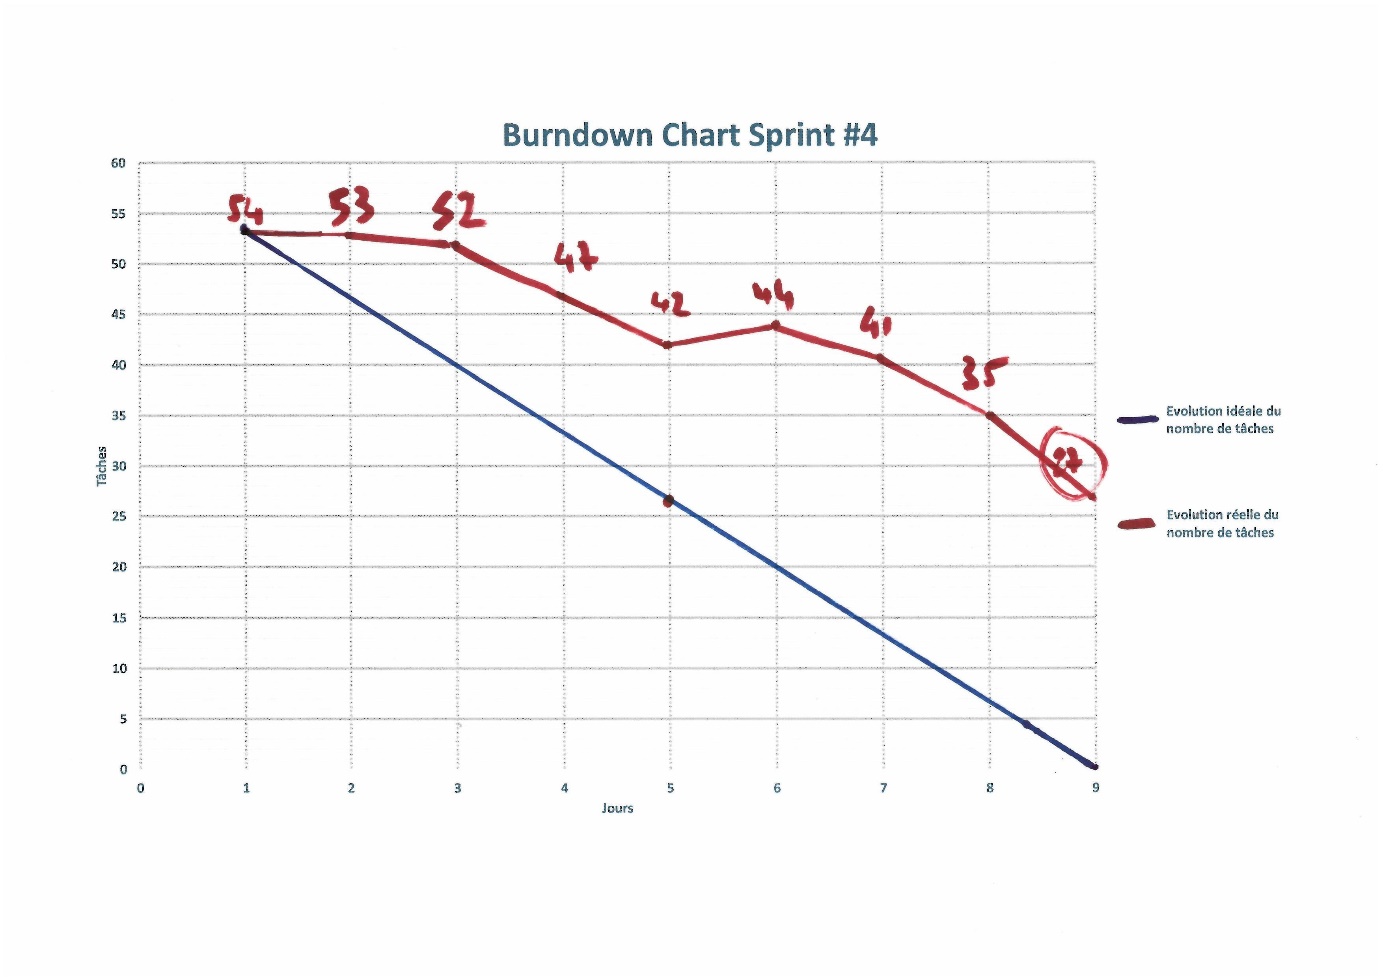 Figure 17 : Burndown Chart